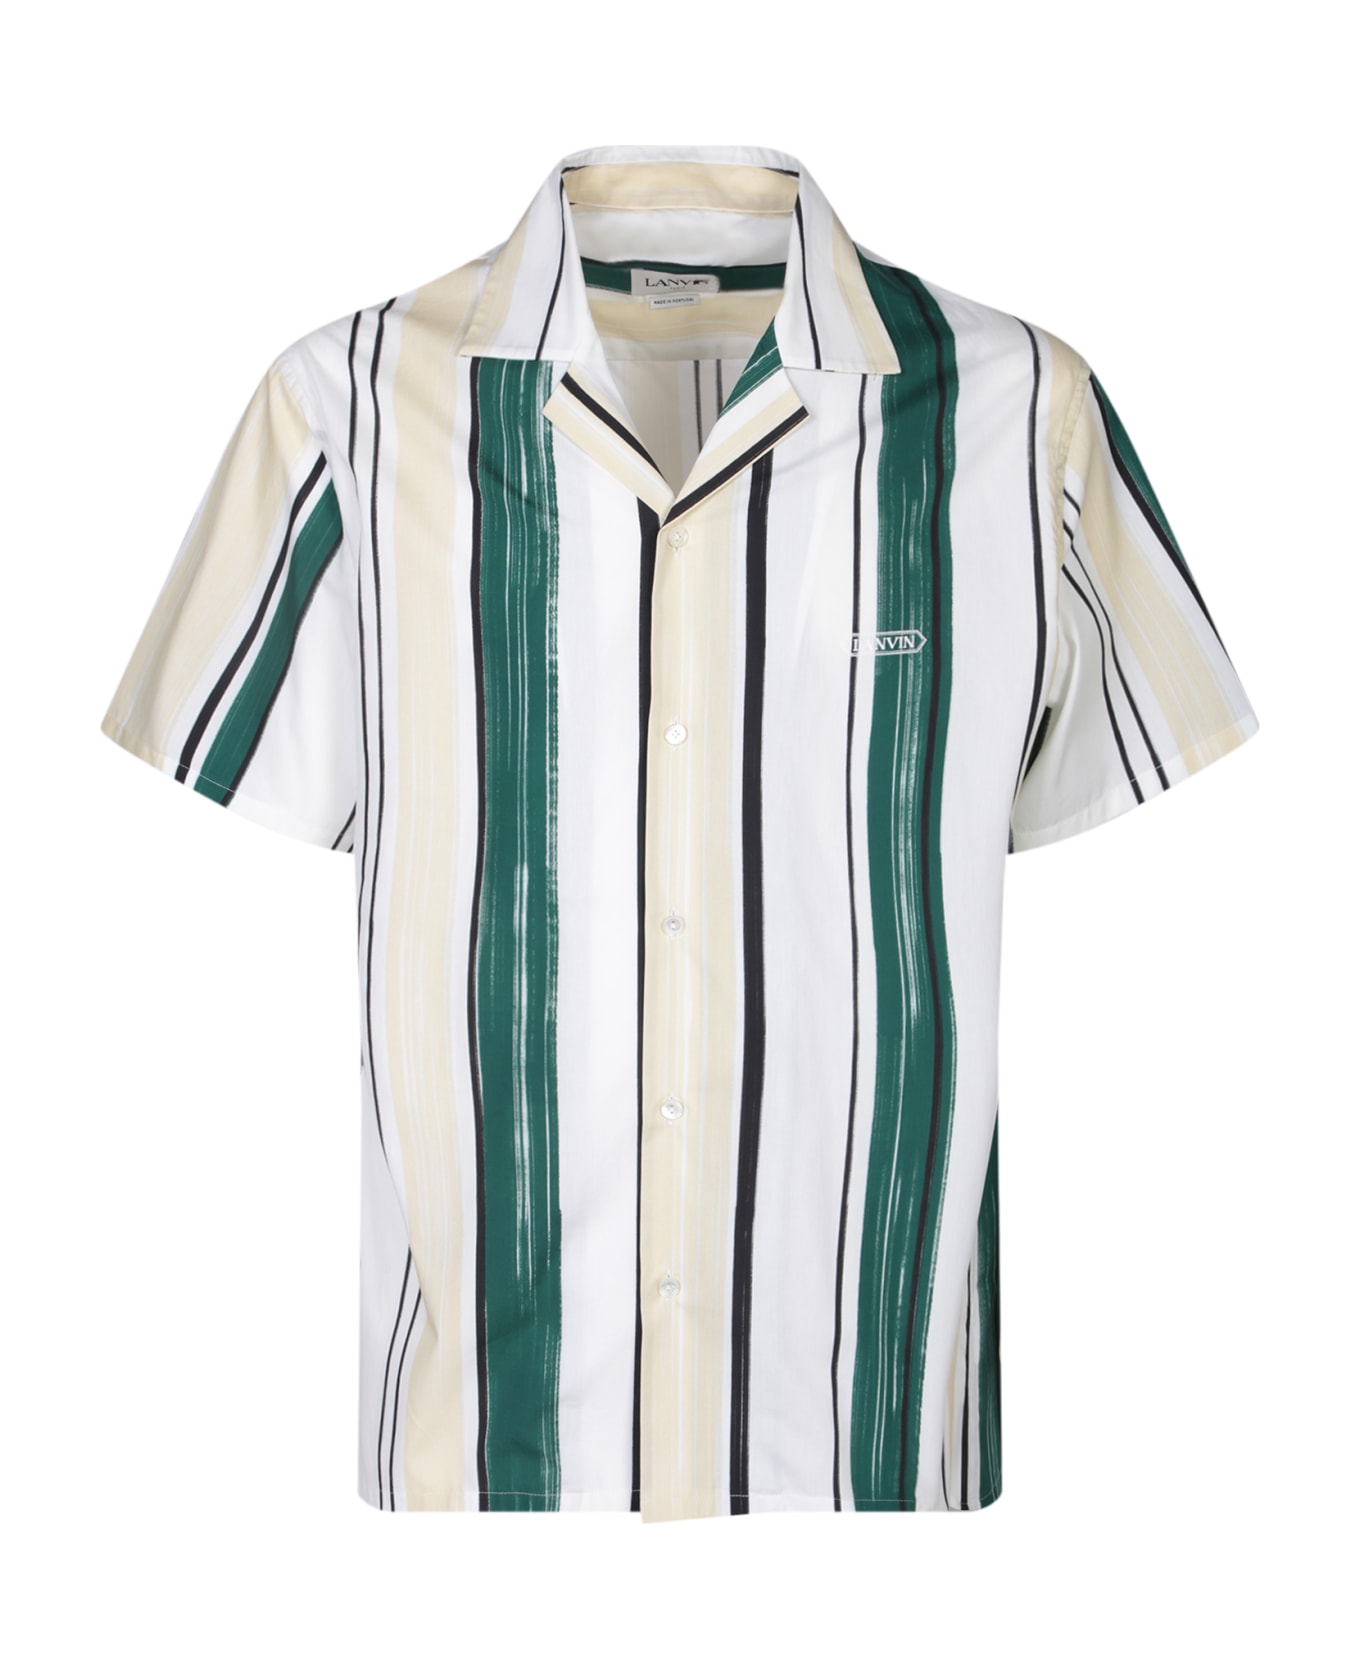 Lanvin Bowling White/green Shirt - Green